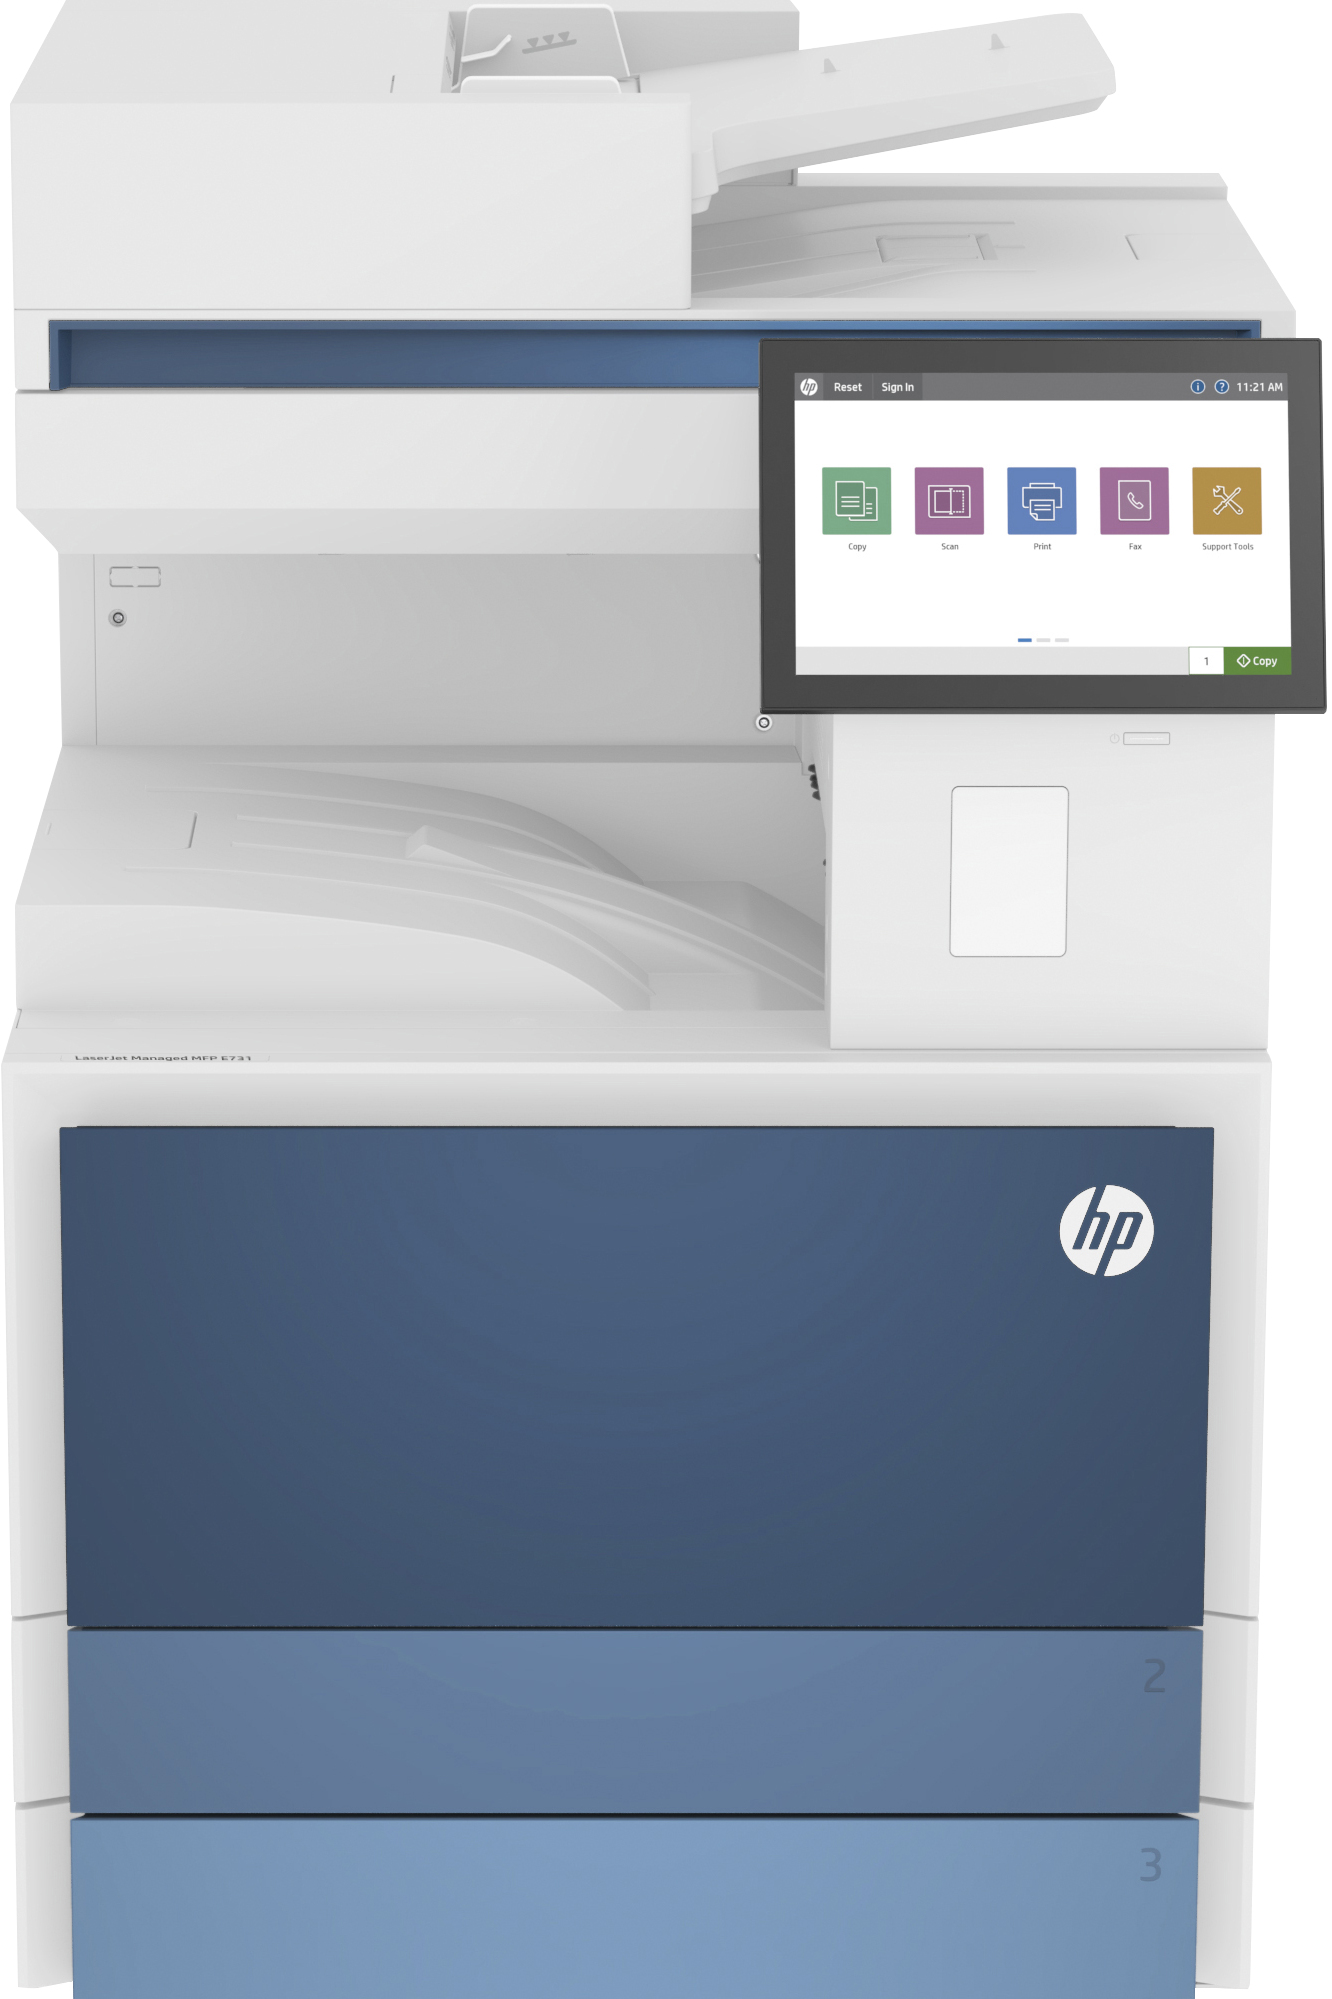 Image of HP LaserJet Stampante multifunzione Managed E731dn, Bianco e nero, Stampante per Enterprise, Stampa, copia, scansione, fax (opzionale), Stampa fronte/retro; scansione fronte/retro; scansione verso e-mail/PDF; Avanzate funzionalità di sicurezza;